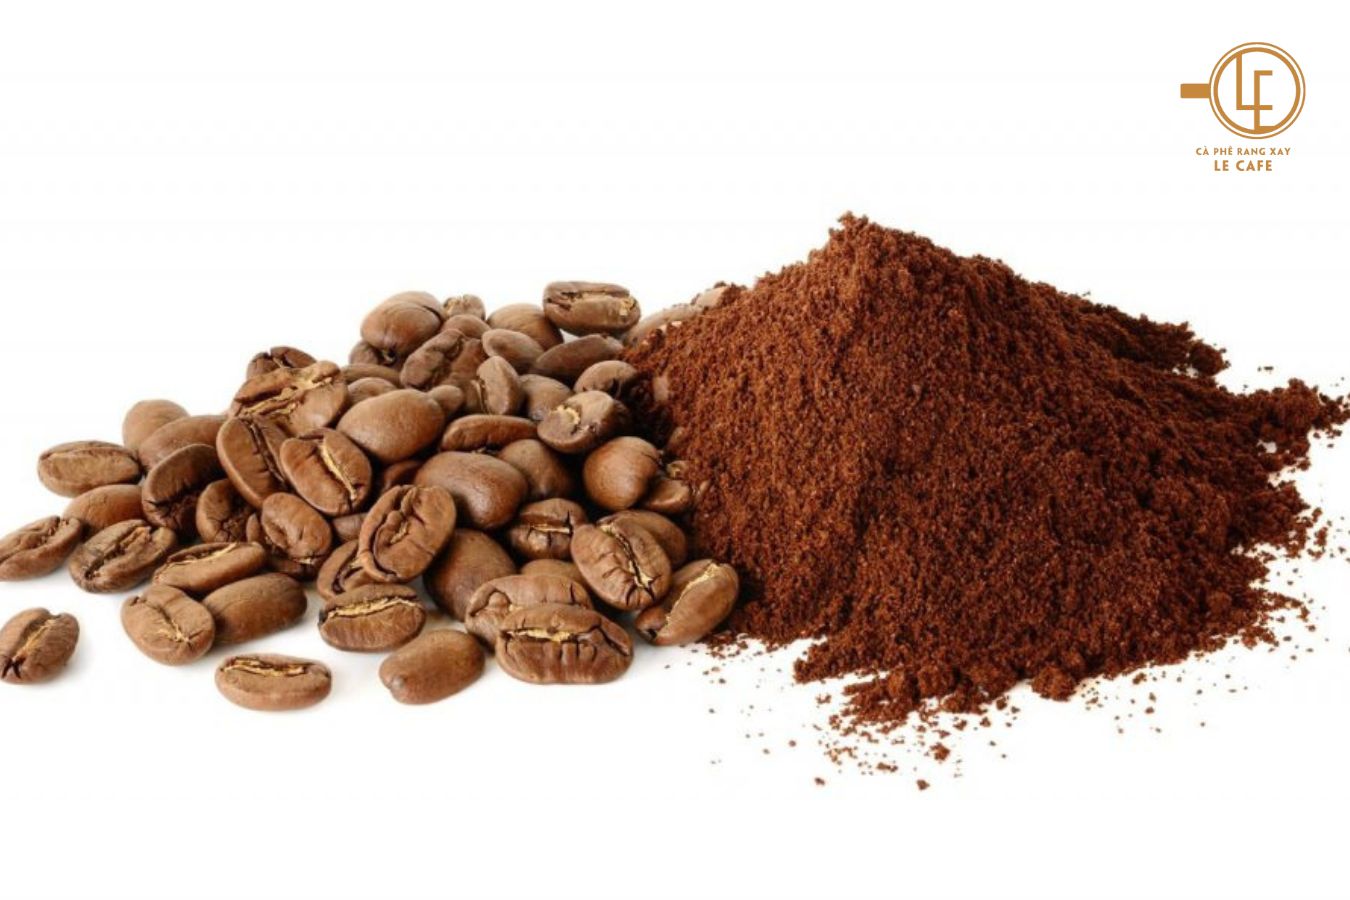 Cà phê rang xay hữu cơ